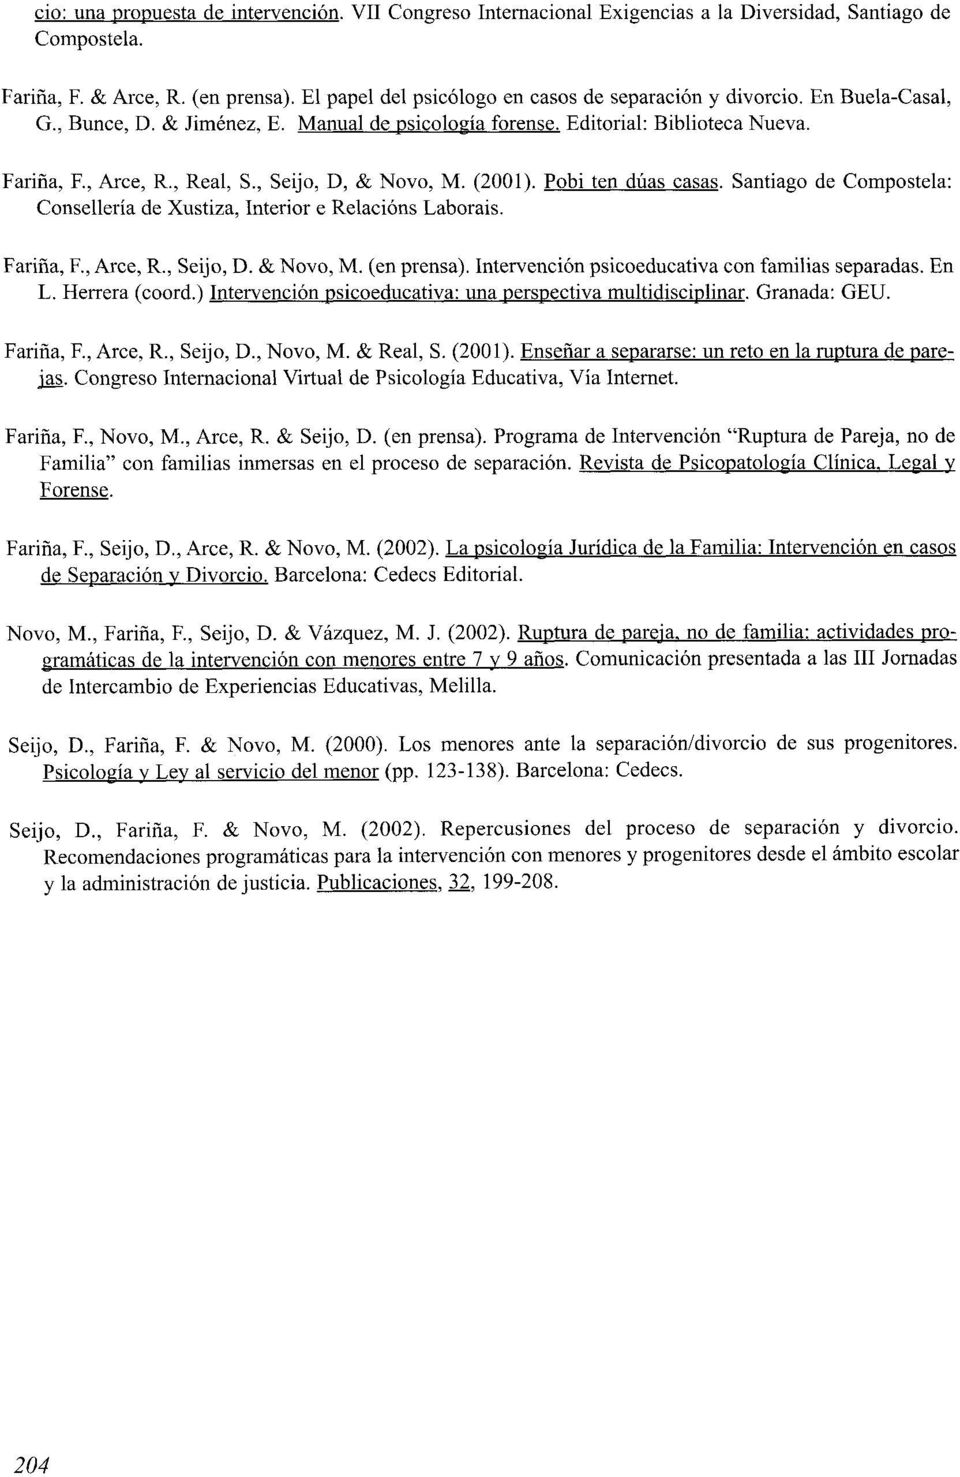 , Seijo, D, & Novo, M. (2001). Pobi ten dúas casas. Santiago de Compostela: Consellería de Xustiza, Interior e Relacións Laborais. Fariña, F., Arce, R., Seijo, D. & Novo, M. (en prensa).